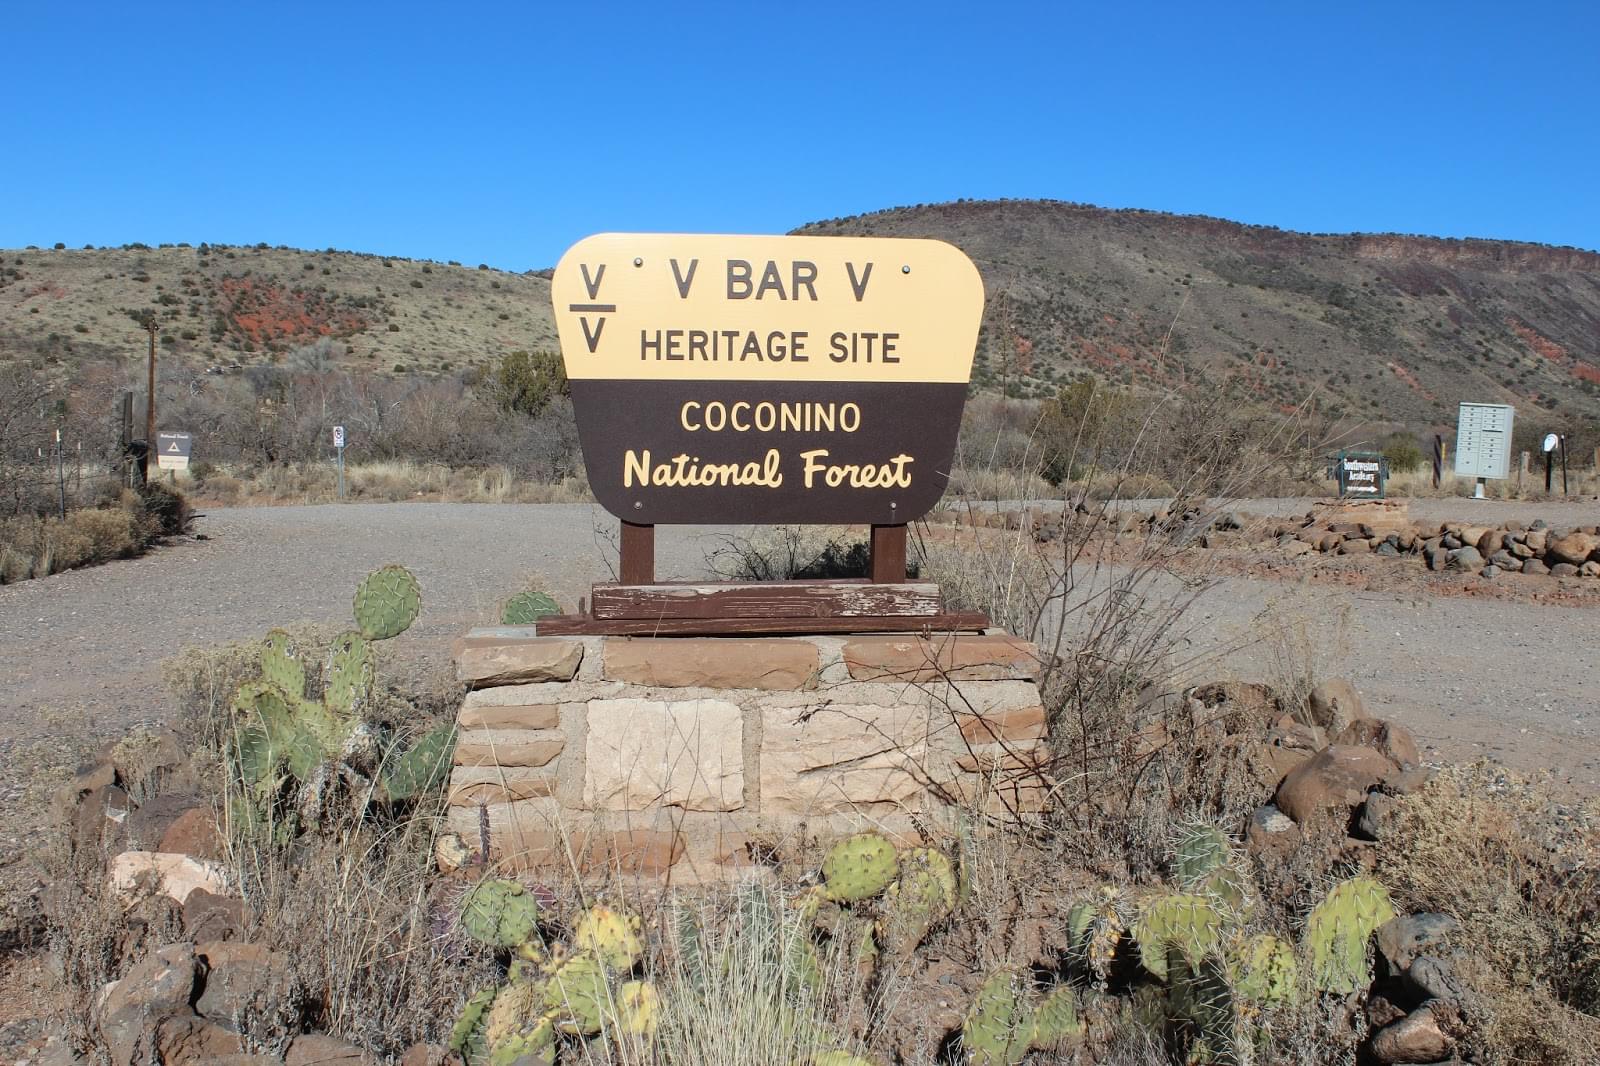 V-Bar-V Heritage Site